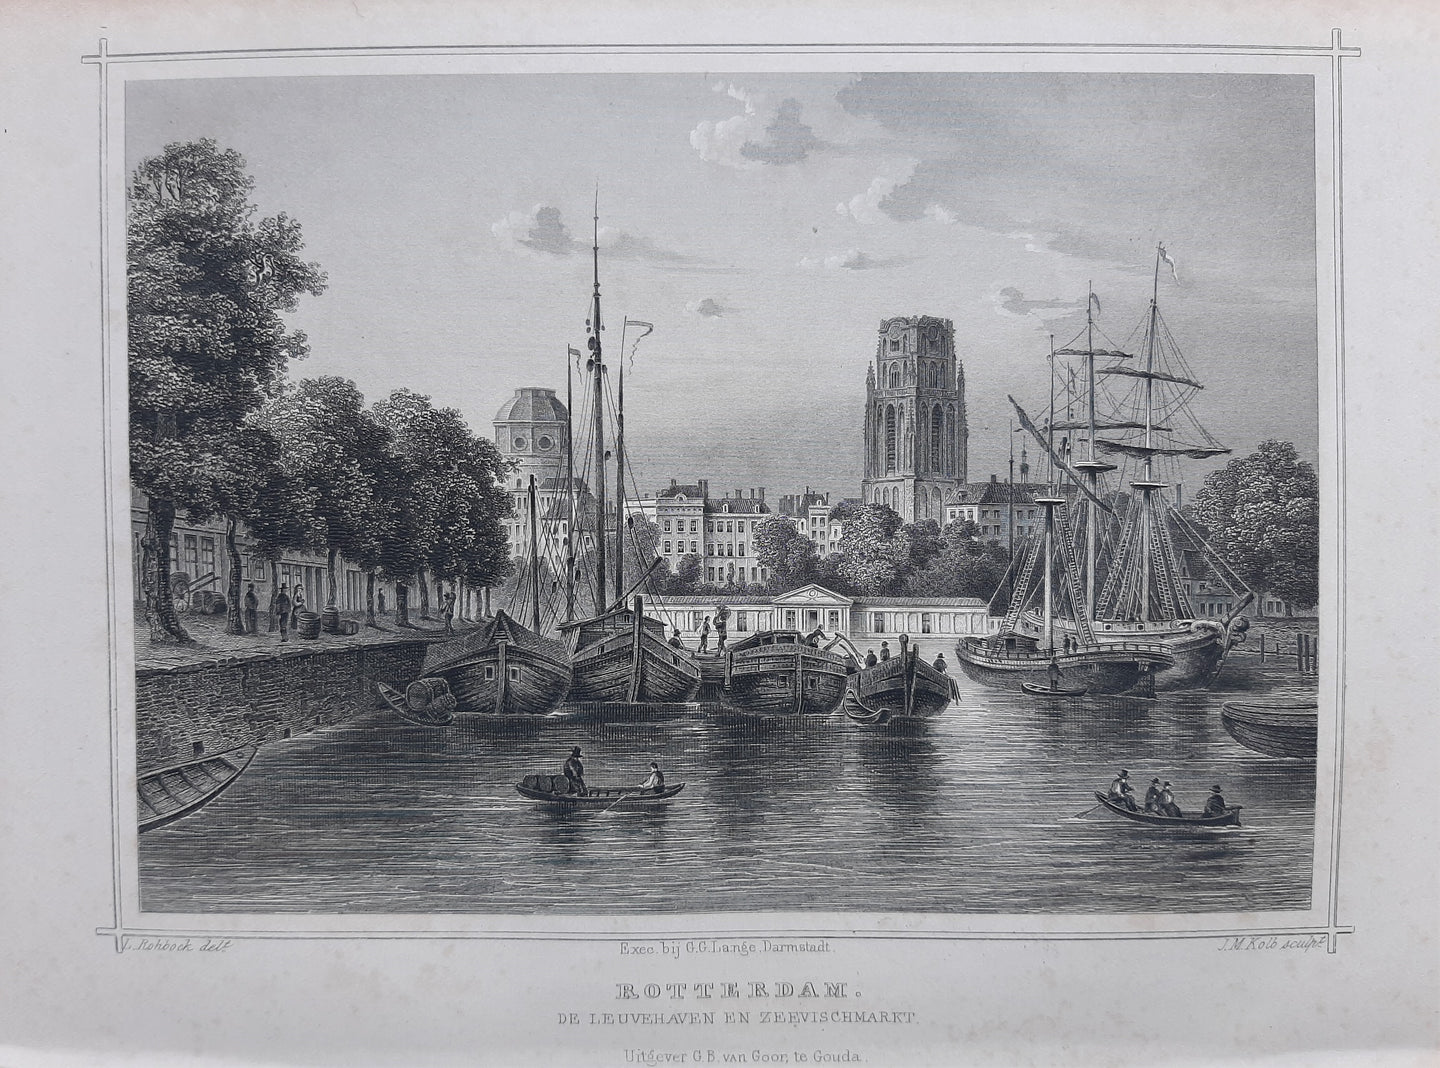 ROTTERDAM Leuvehaven en zeevismarkt - JL Terwen / GB van Goor - 1858